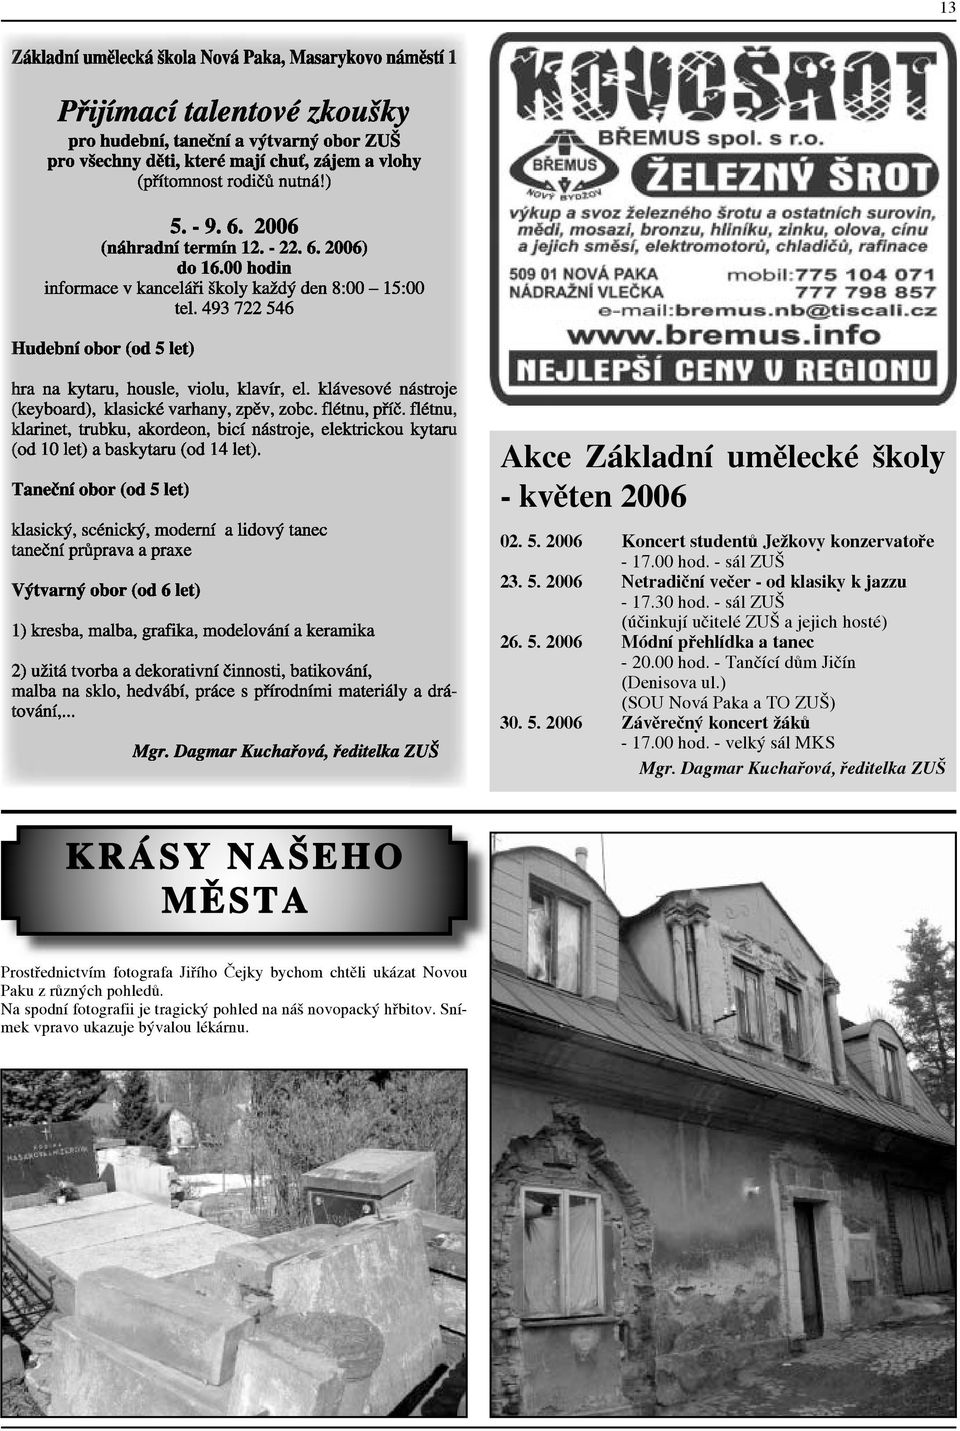 ) (SOU Nová Paka a TO ZUŠ) 30. 5. 2006 Závěrečný koncert žáků - 17.00 hod. - velký sál MKS Mgr.